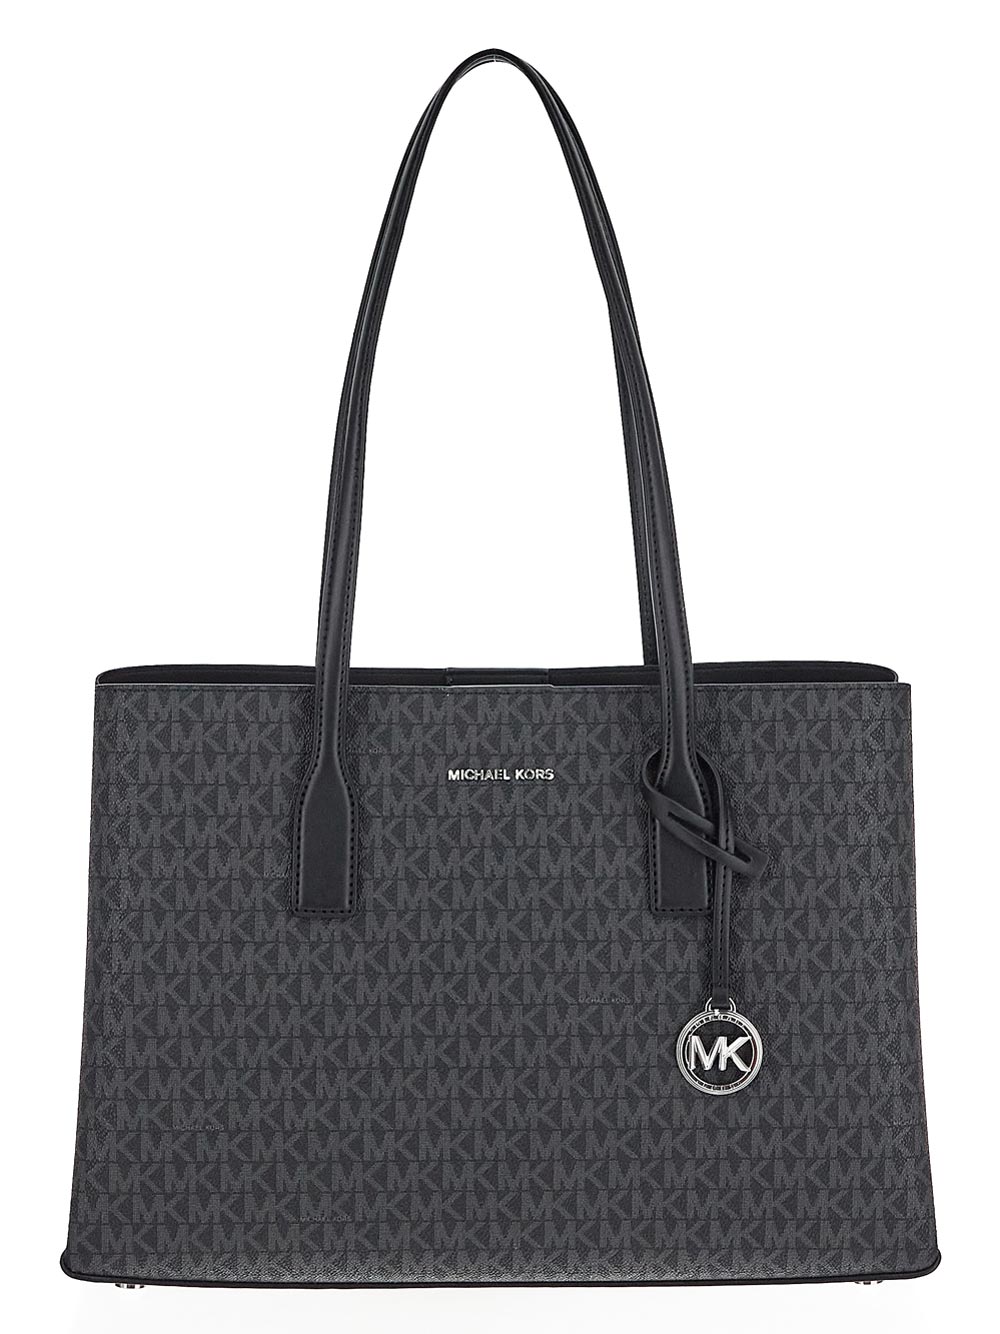 Michael Kors Ruthie Medium Signature Logo Tote Bag